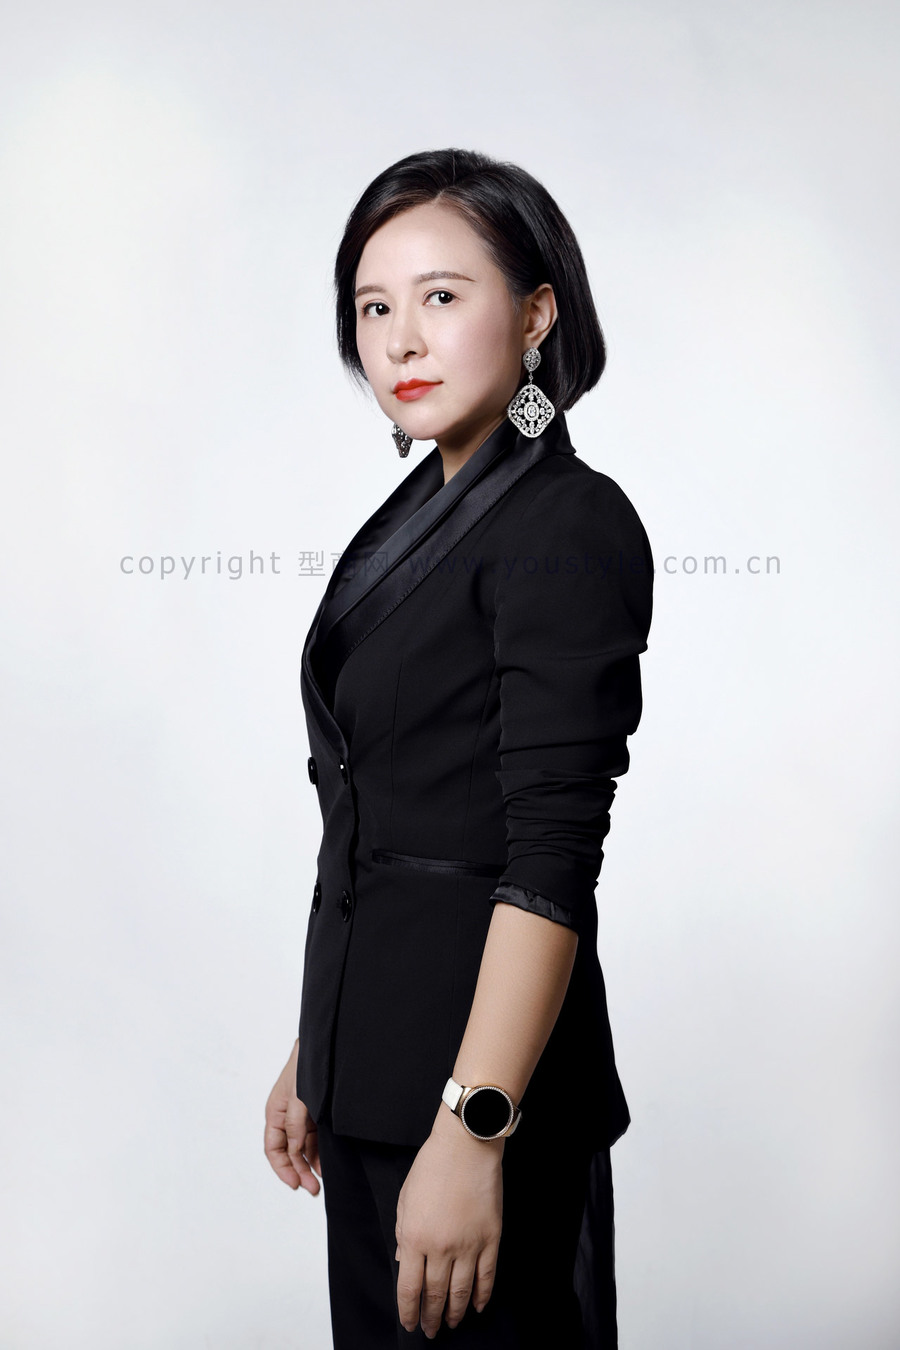 高端时尚,有气场的深圳金融女企业家形象照